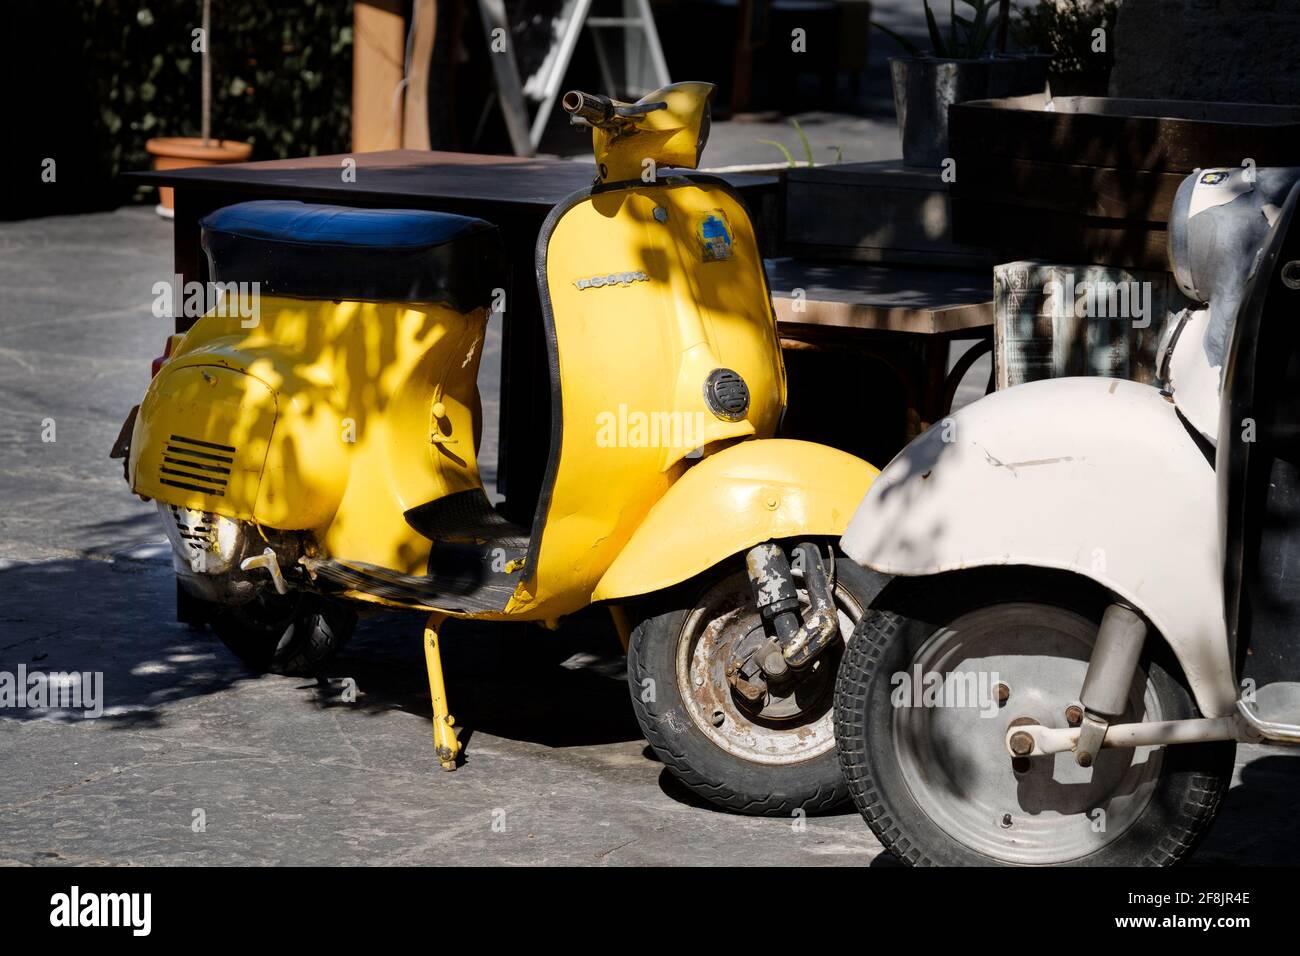 Un vieux scooter Vespa jaune vif emblématique garé dans une rue de la vieille ville de Rhodes, sur l'île de Rhodes, en Grèce Banque D'Images